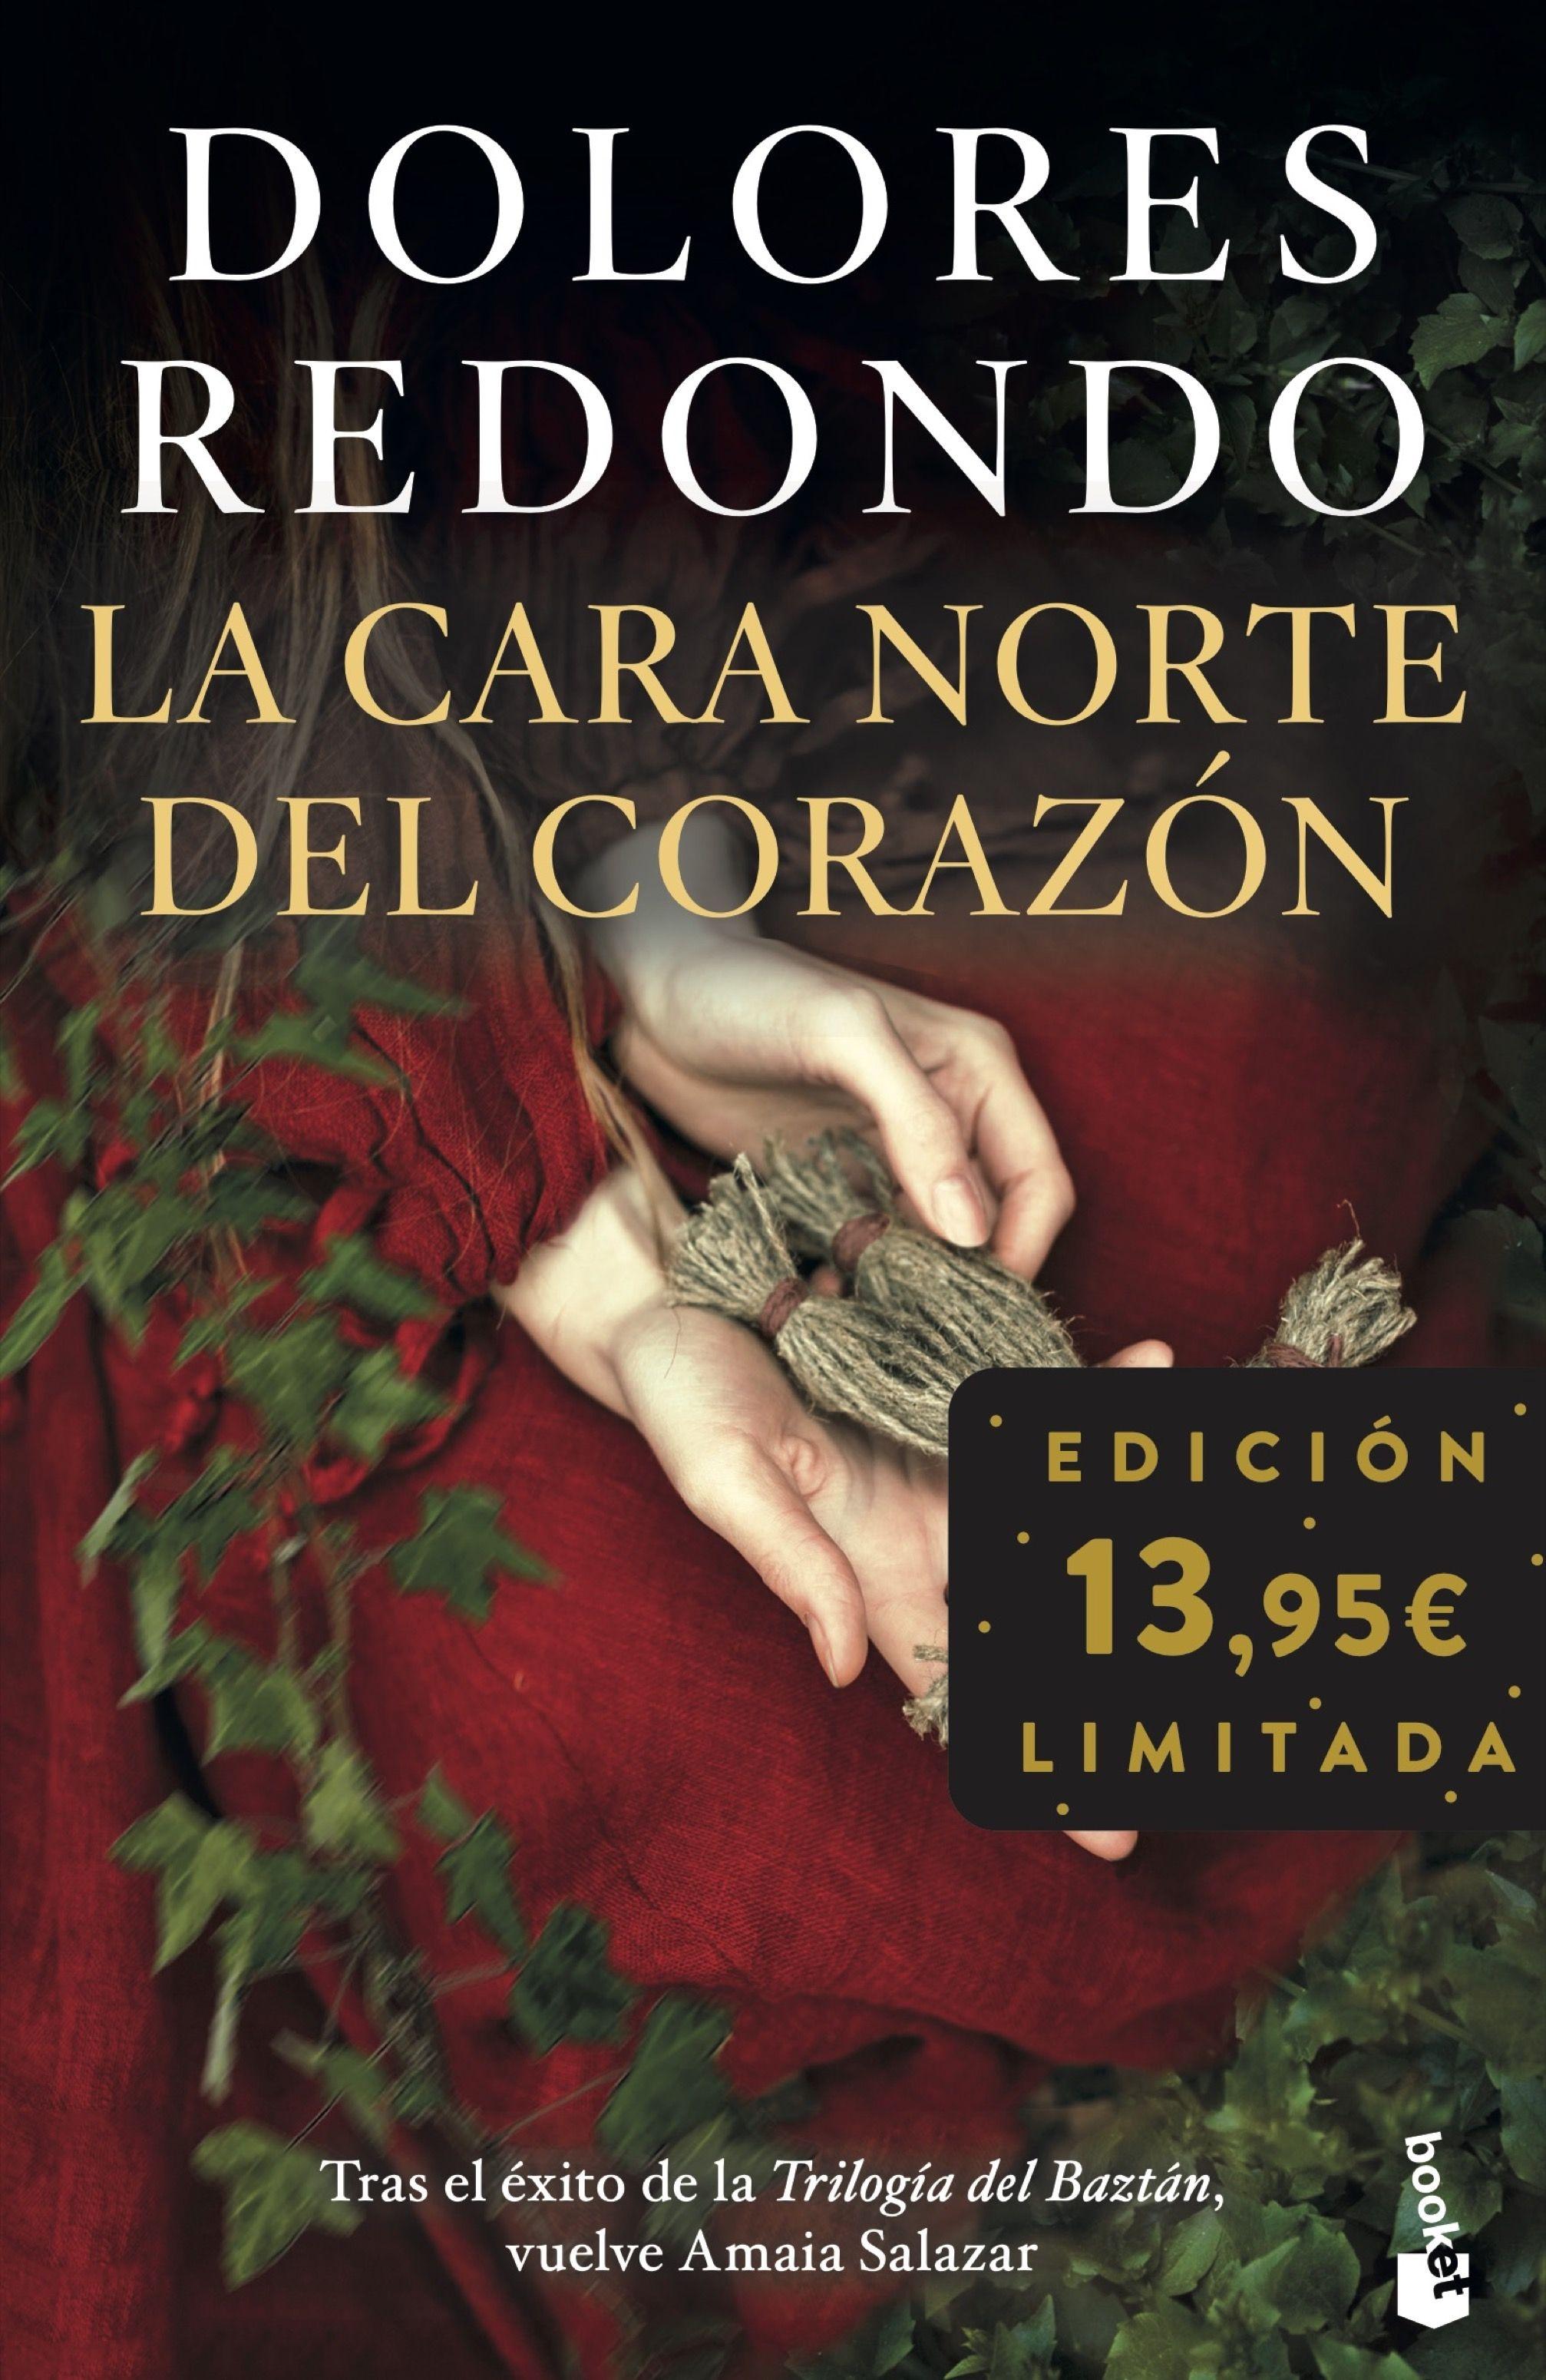 La Cara Norte del Corazón "Edición Limitada". 